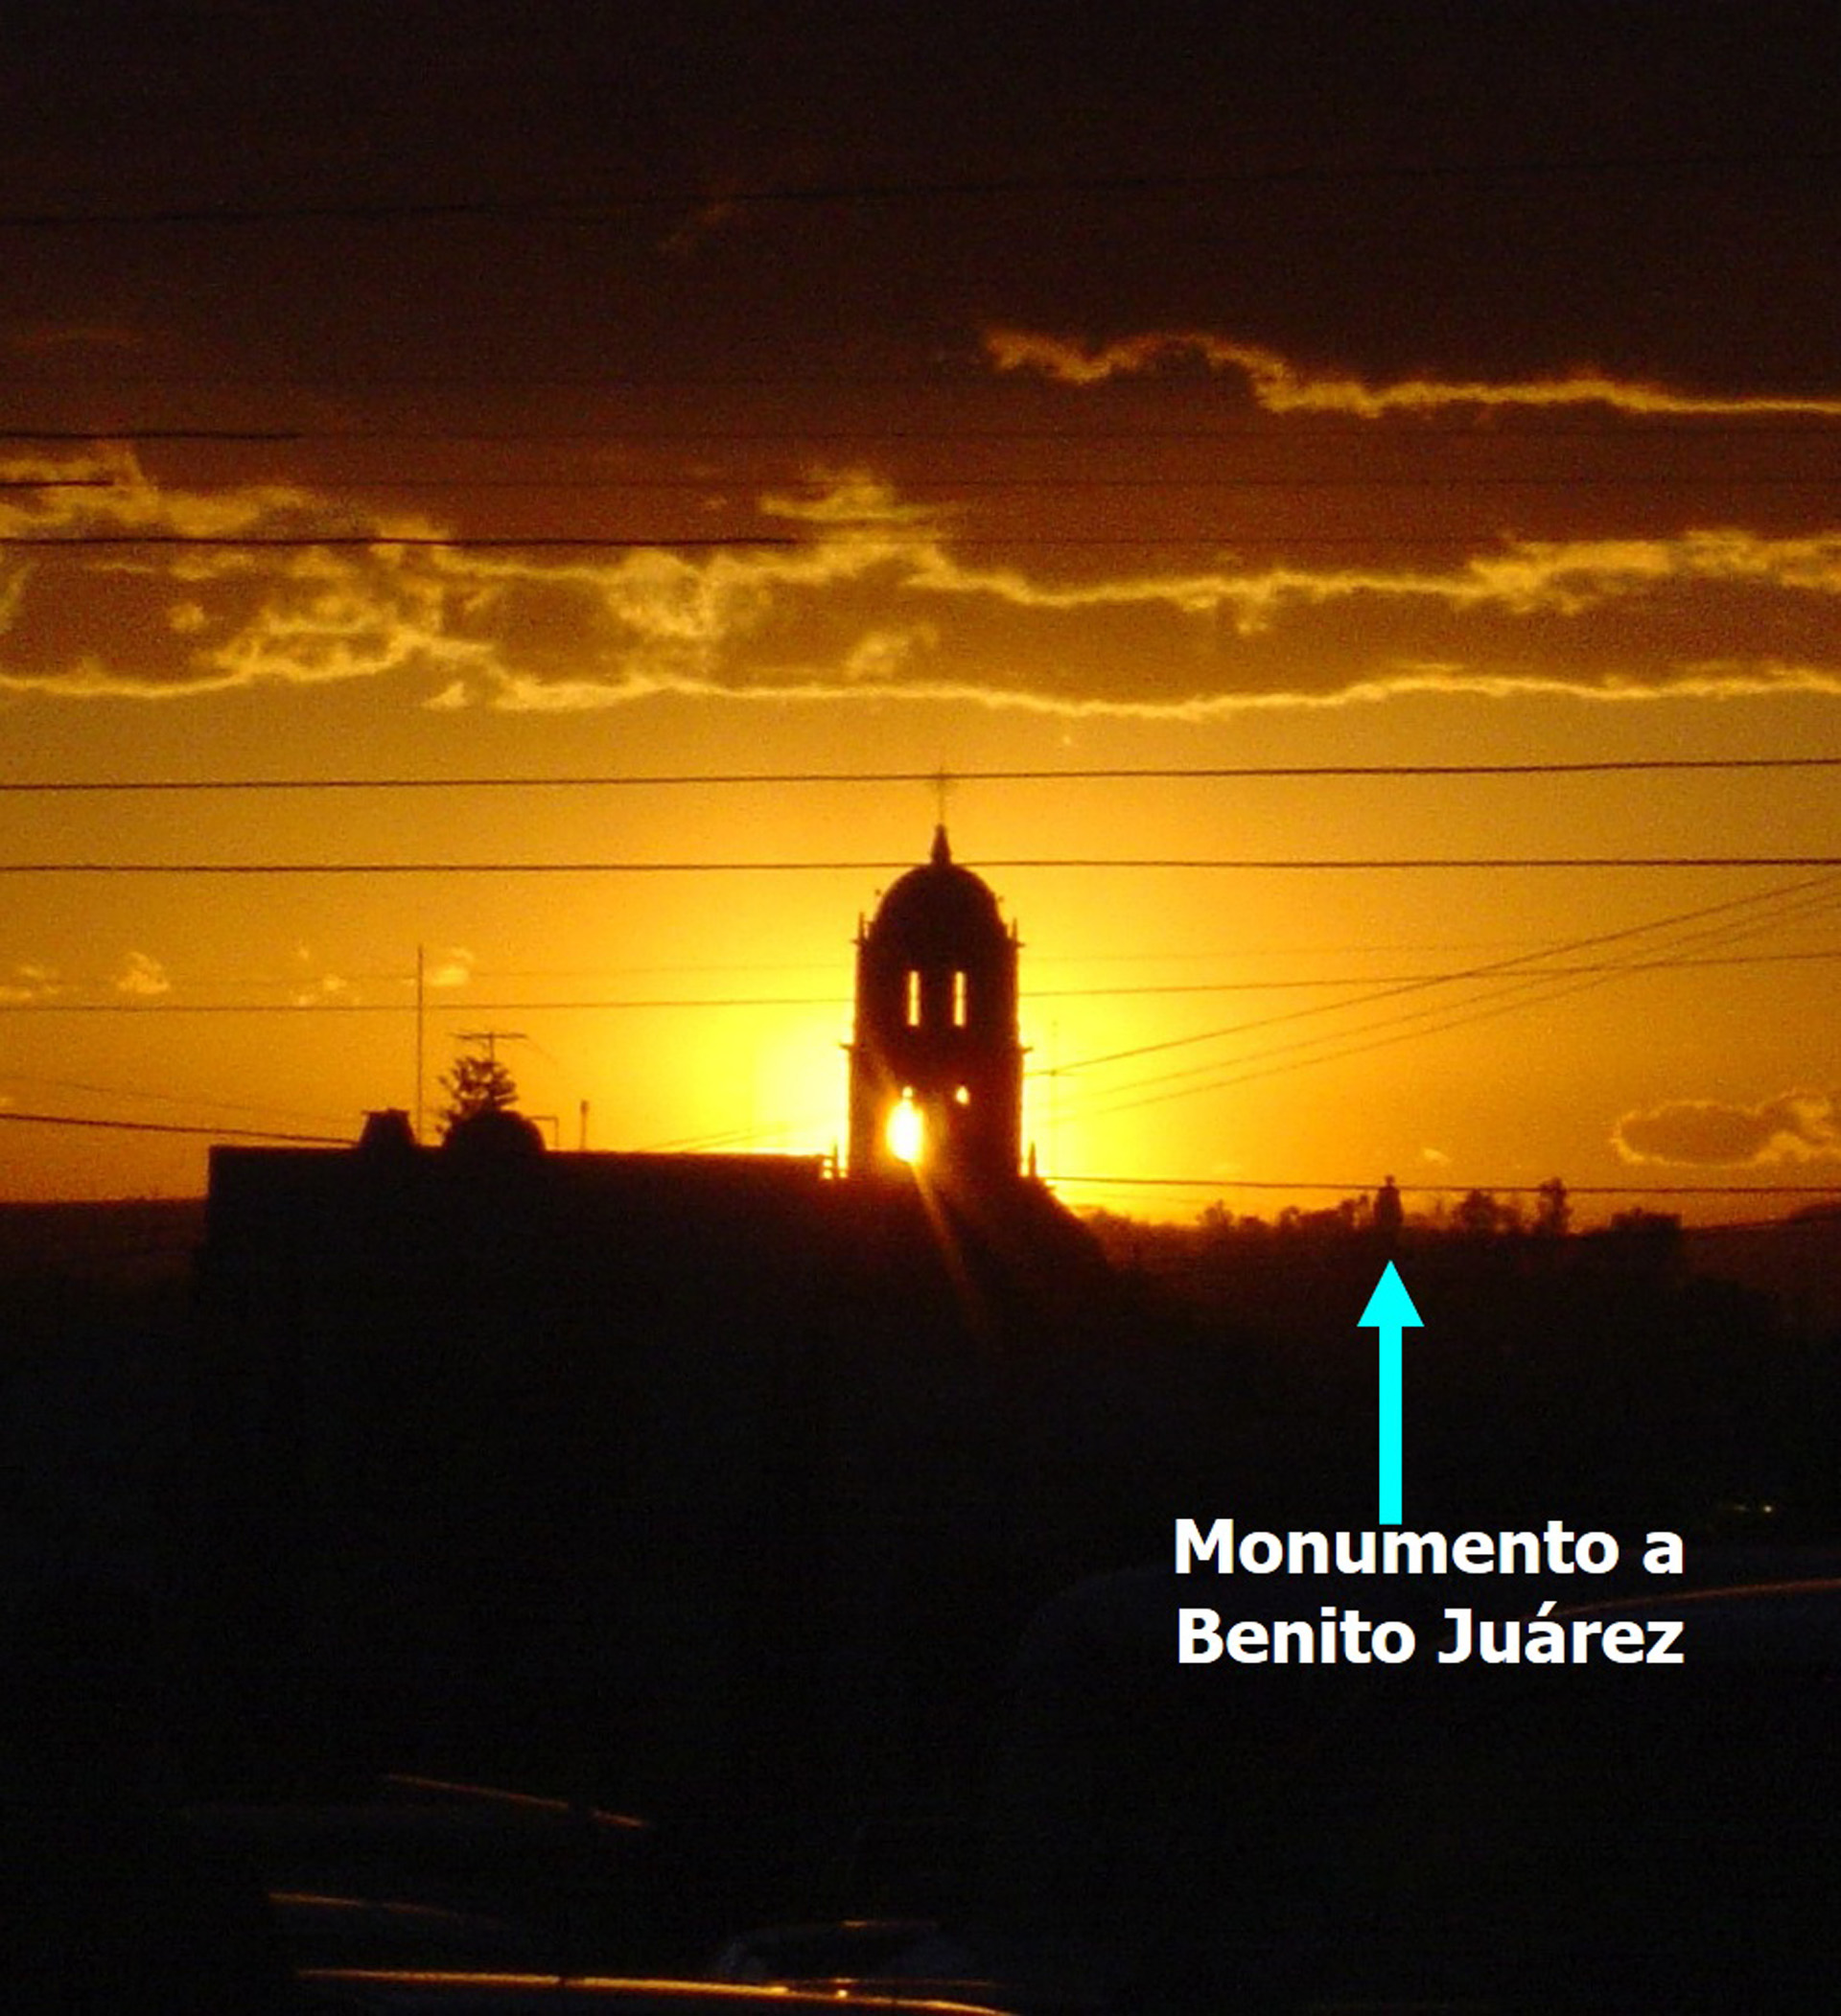 Figura 2. Puesta del Sol sobre templo de San Francisco donde se parecía el monumento a Benito Juárez, el 16 de marzo de 2005. Fotografía de Francisco Granados Saucedo.